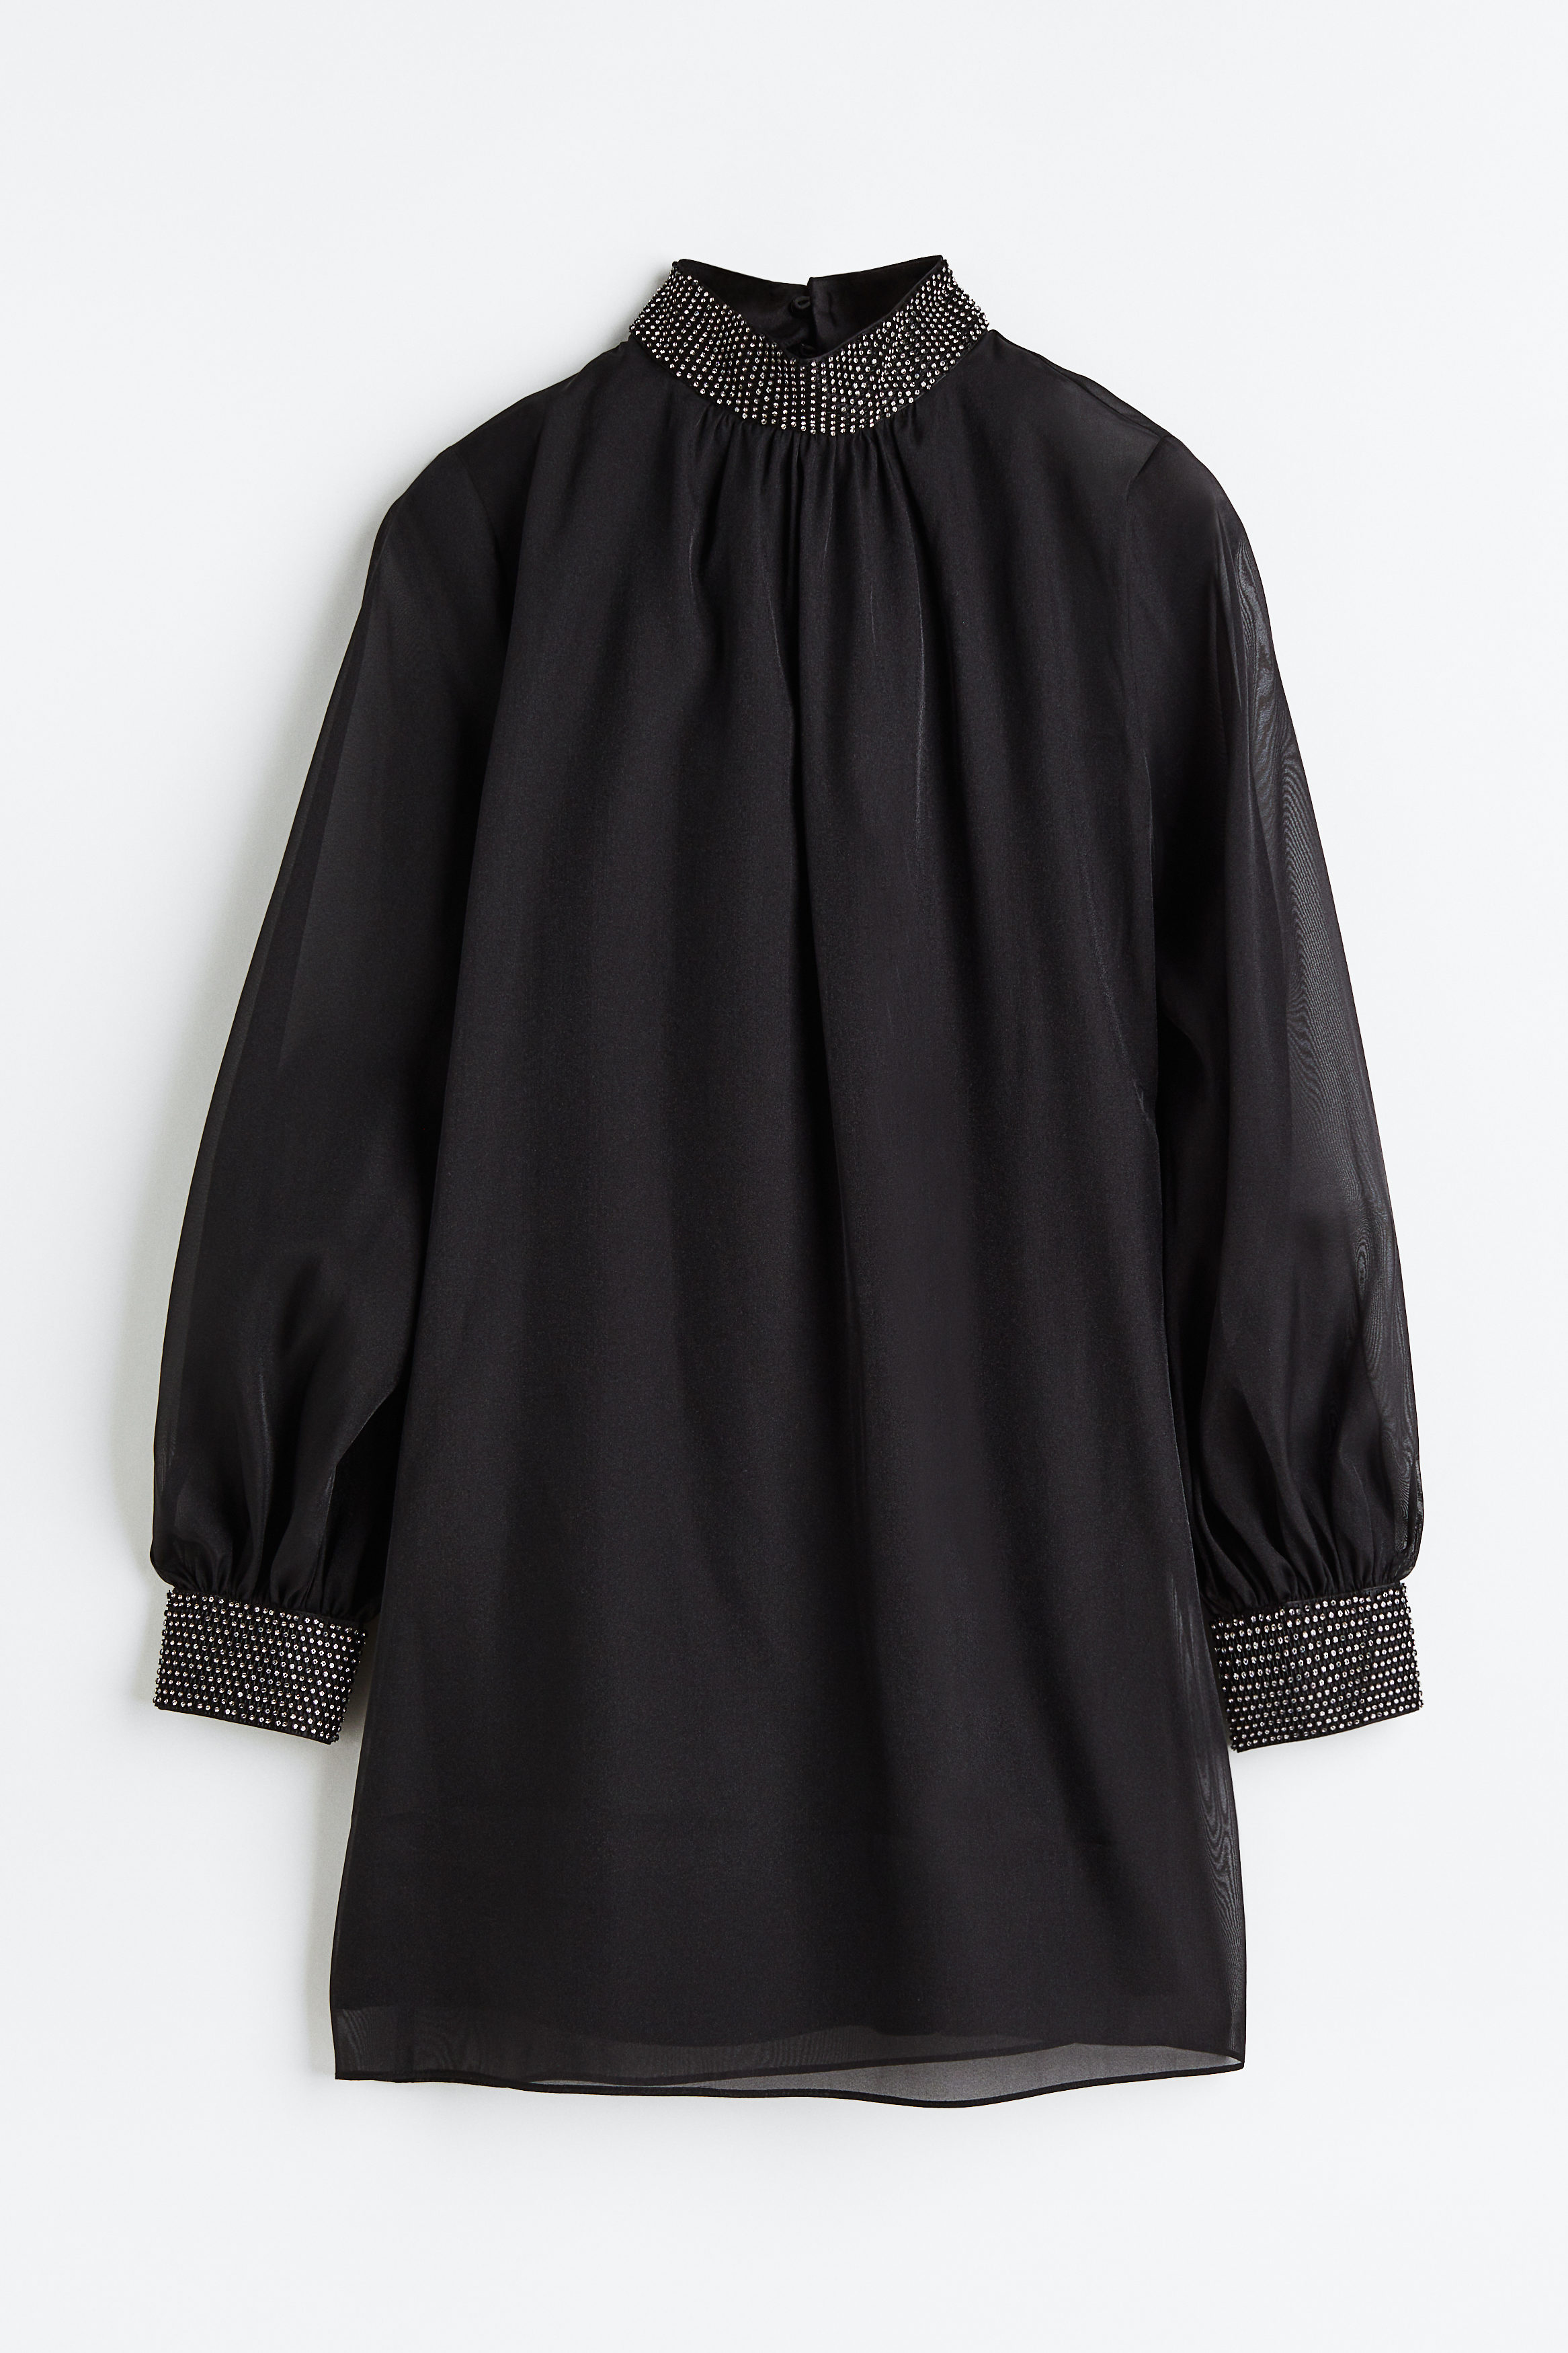 Billede af H&M Kjole Med Similisten Sort, Festkjoler. Farve: Black I størrelse 34